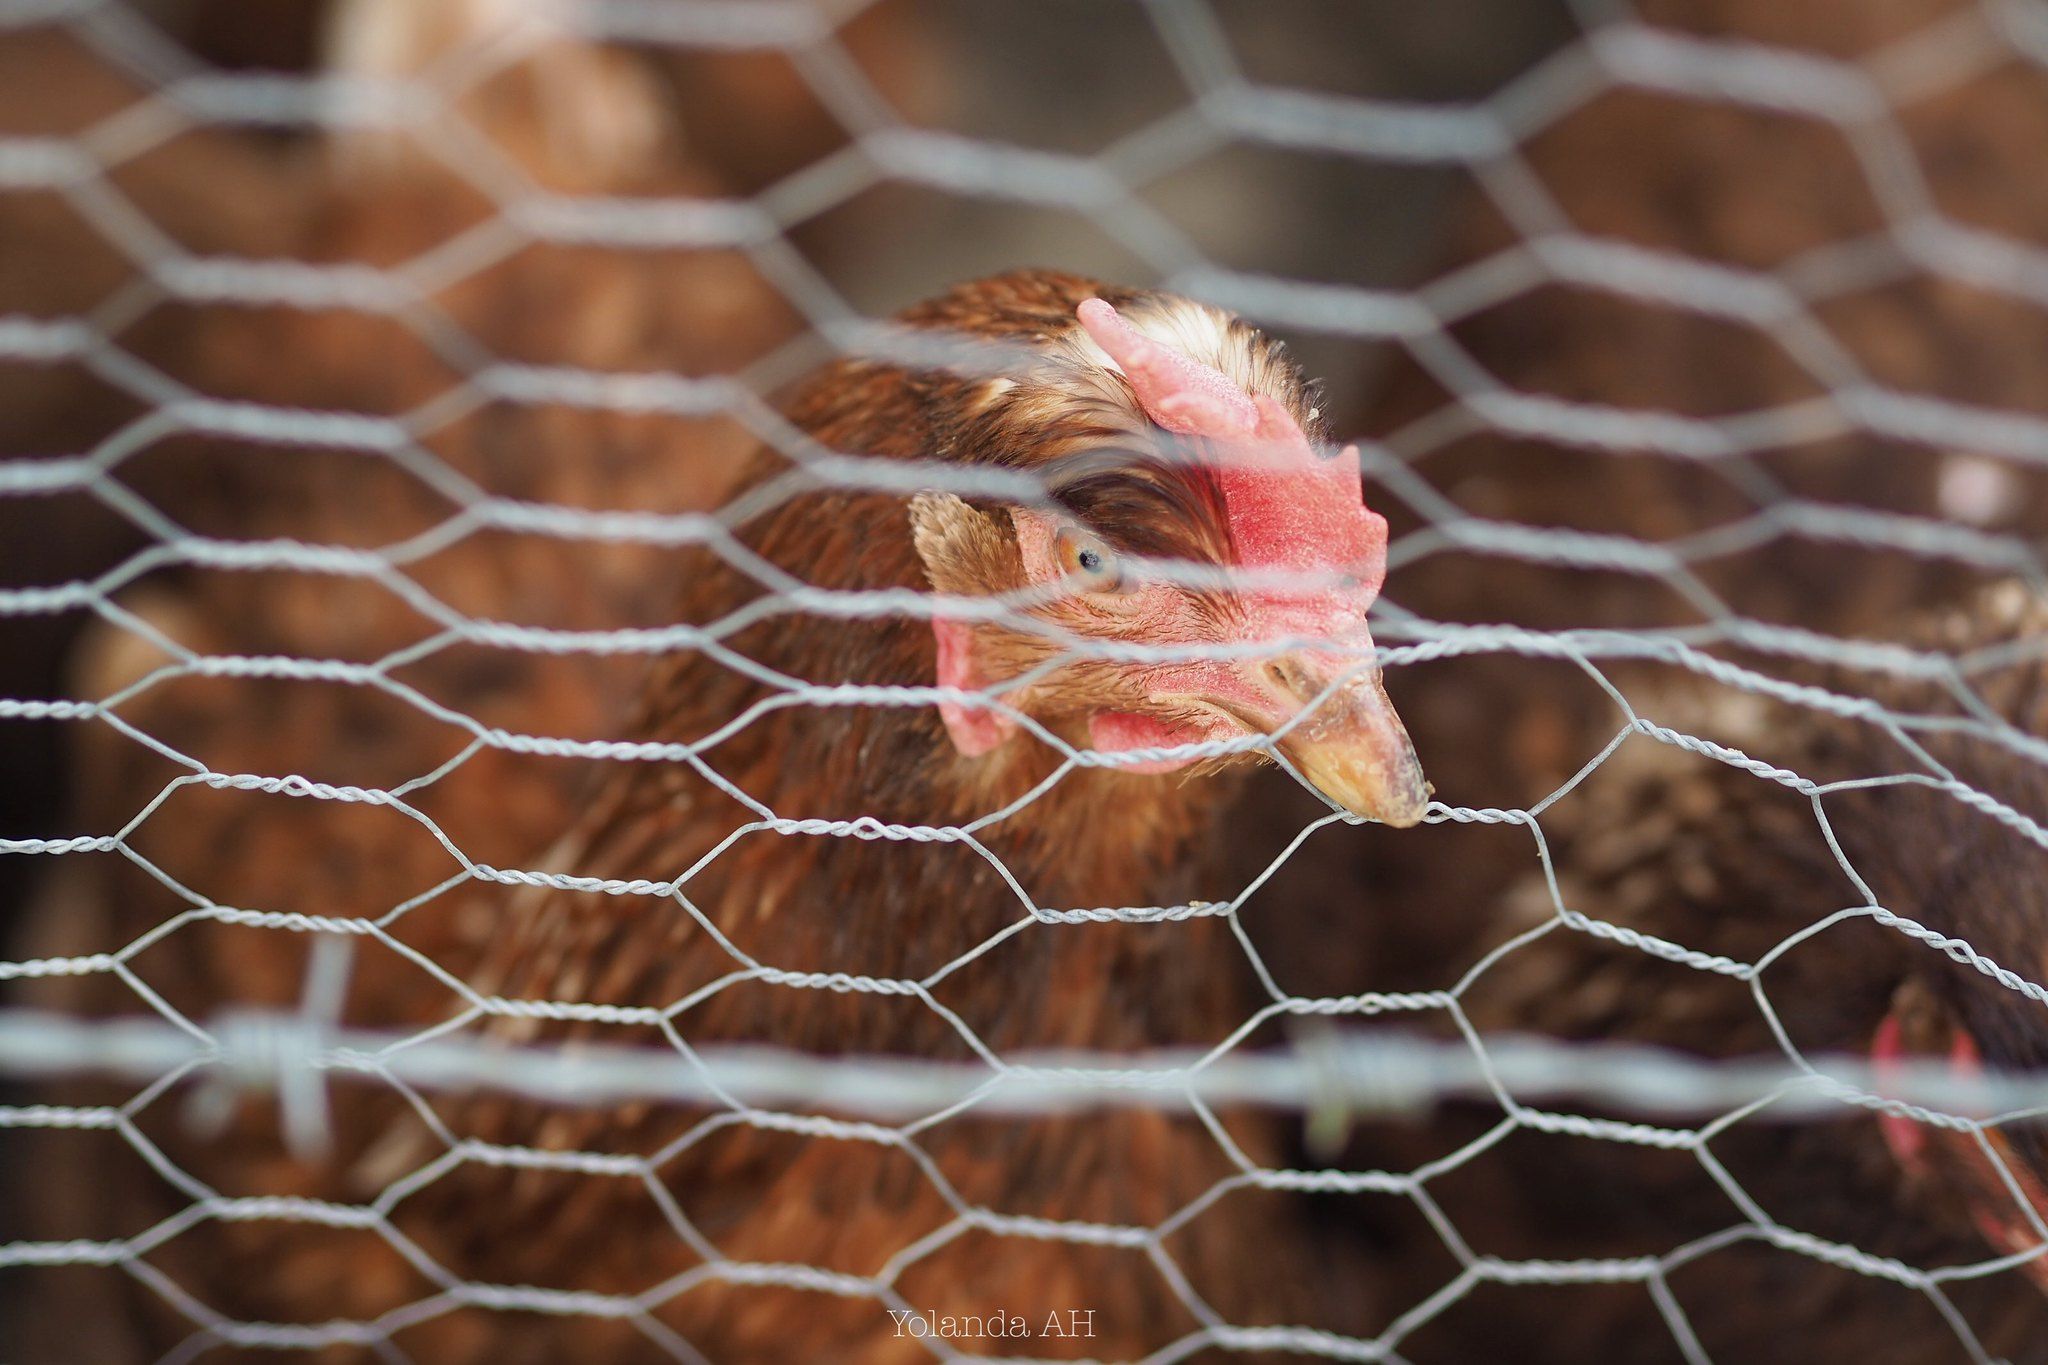 El brote de gripe aviar acabó con la vida de 15 animales.